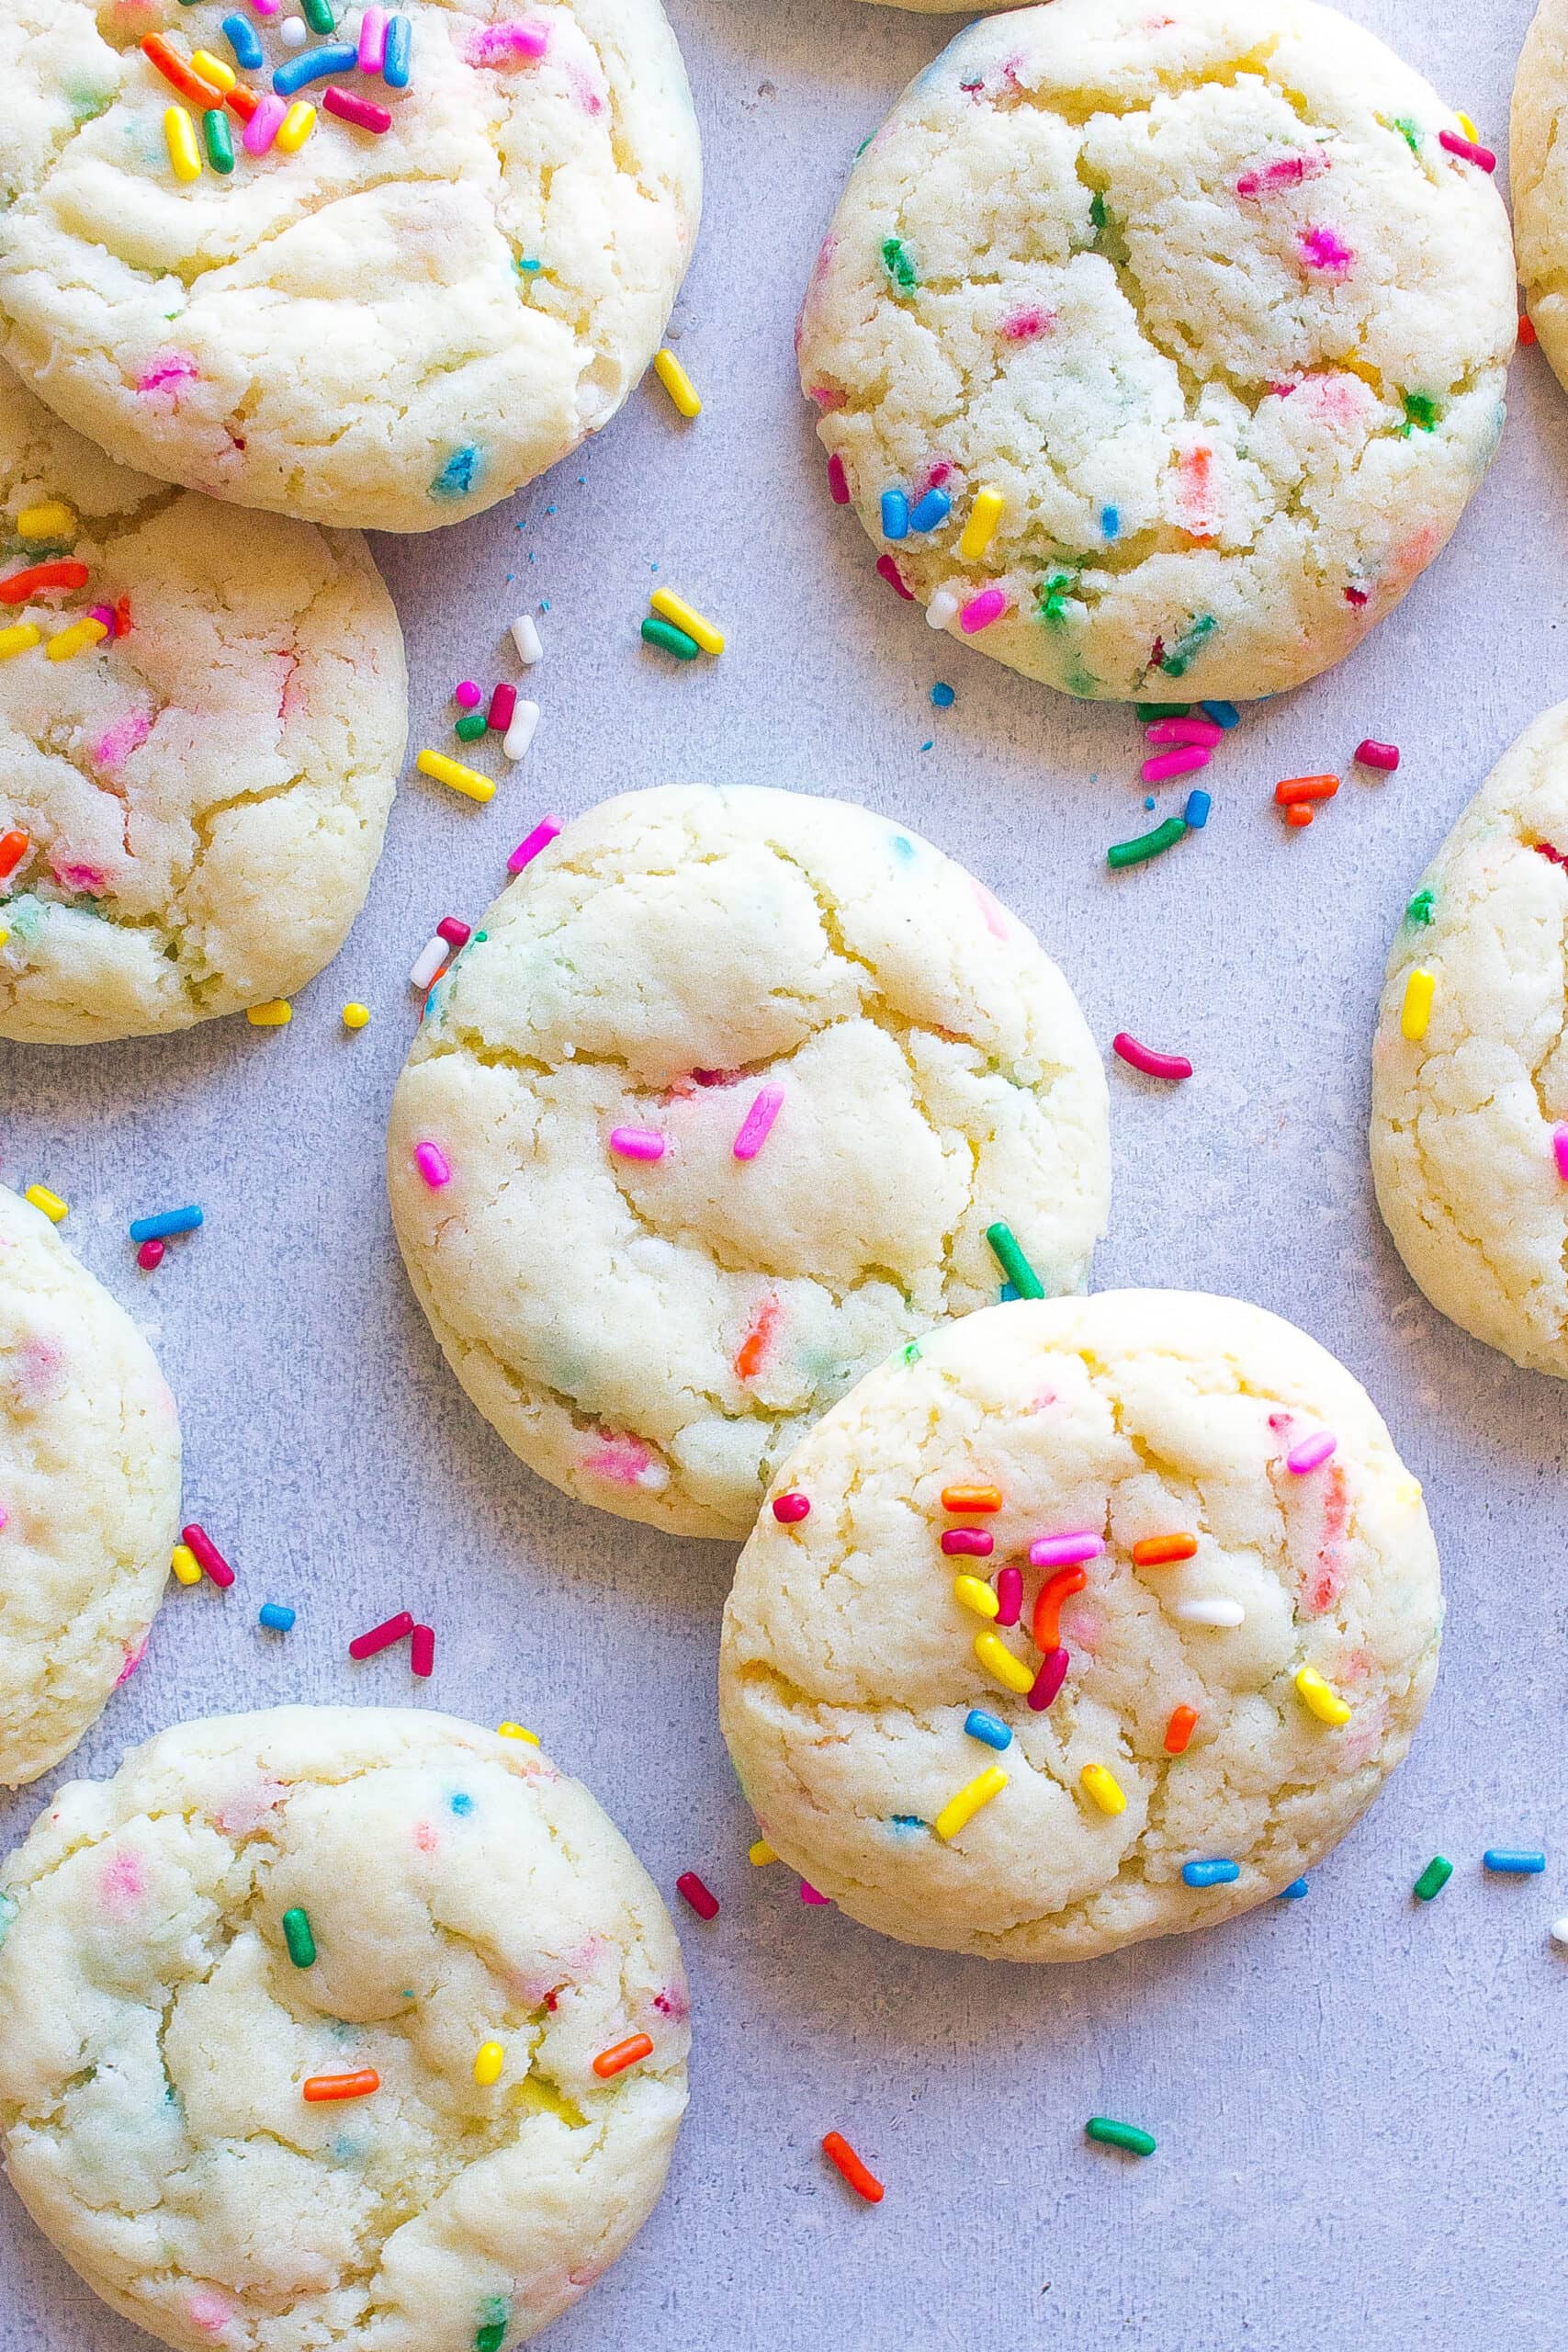 Cookies with sprinkles.